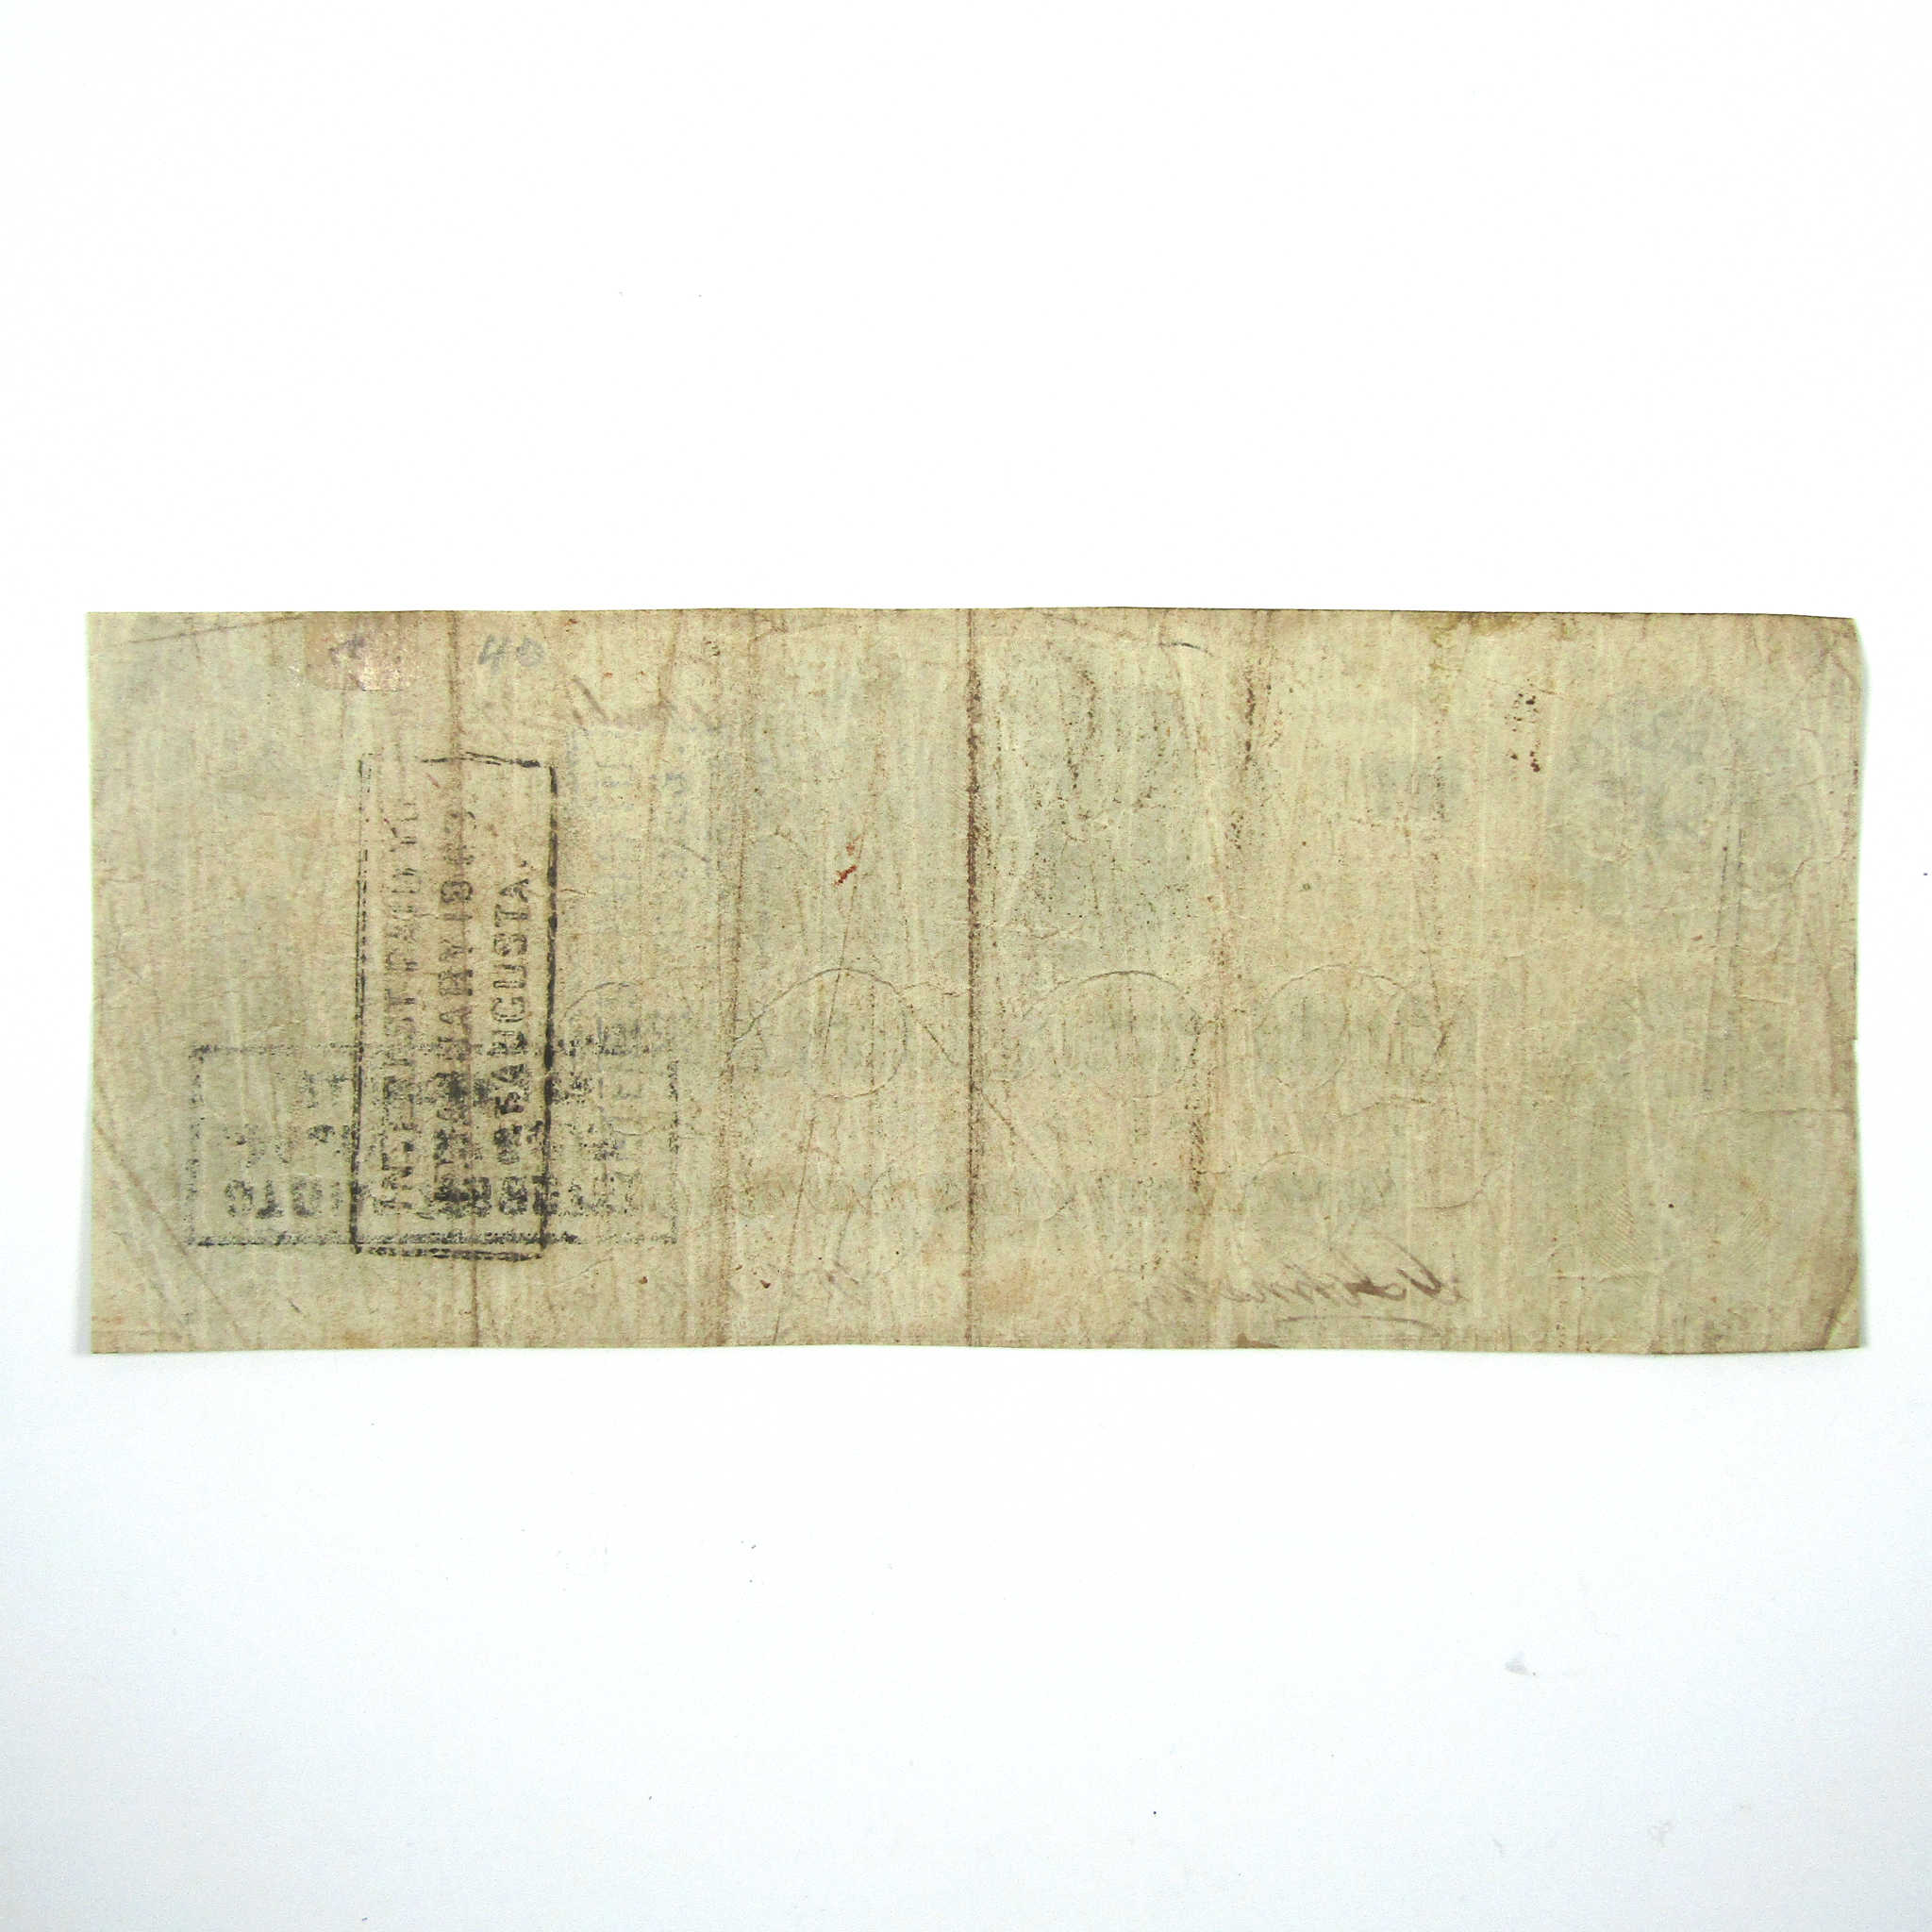 1862 $100 Confederate Note Circulated Currency SKU:I10415